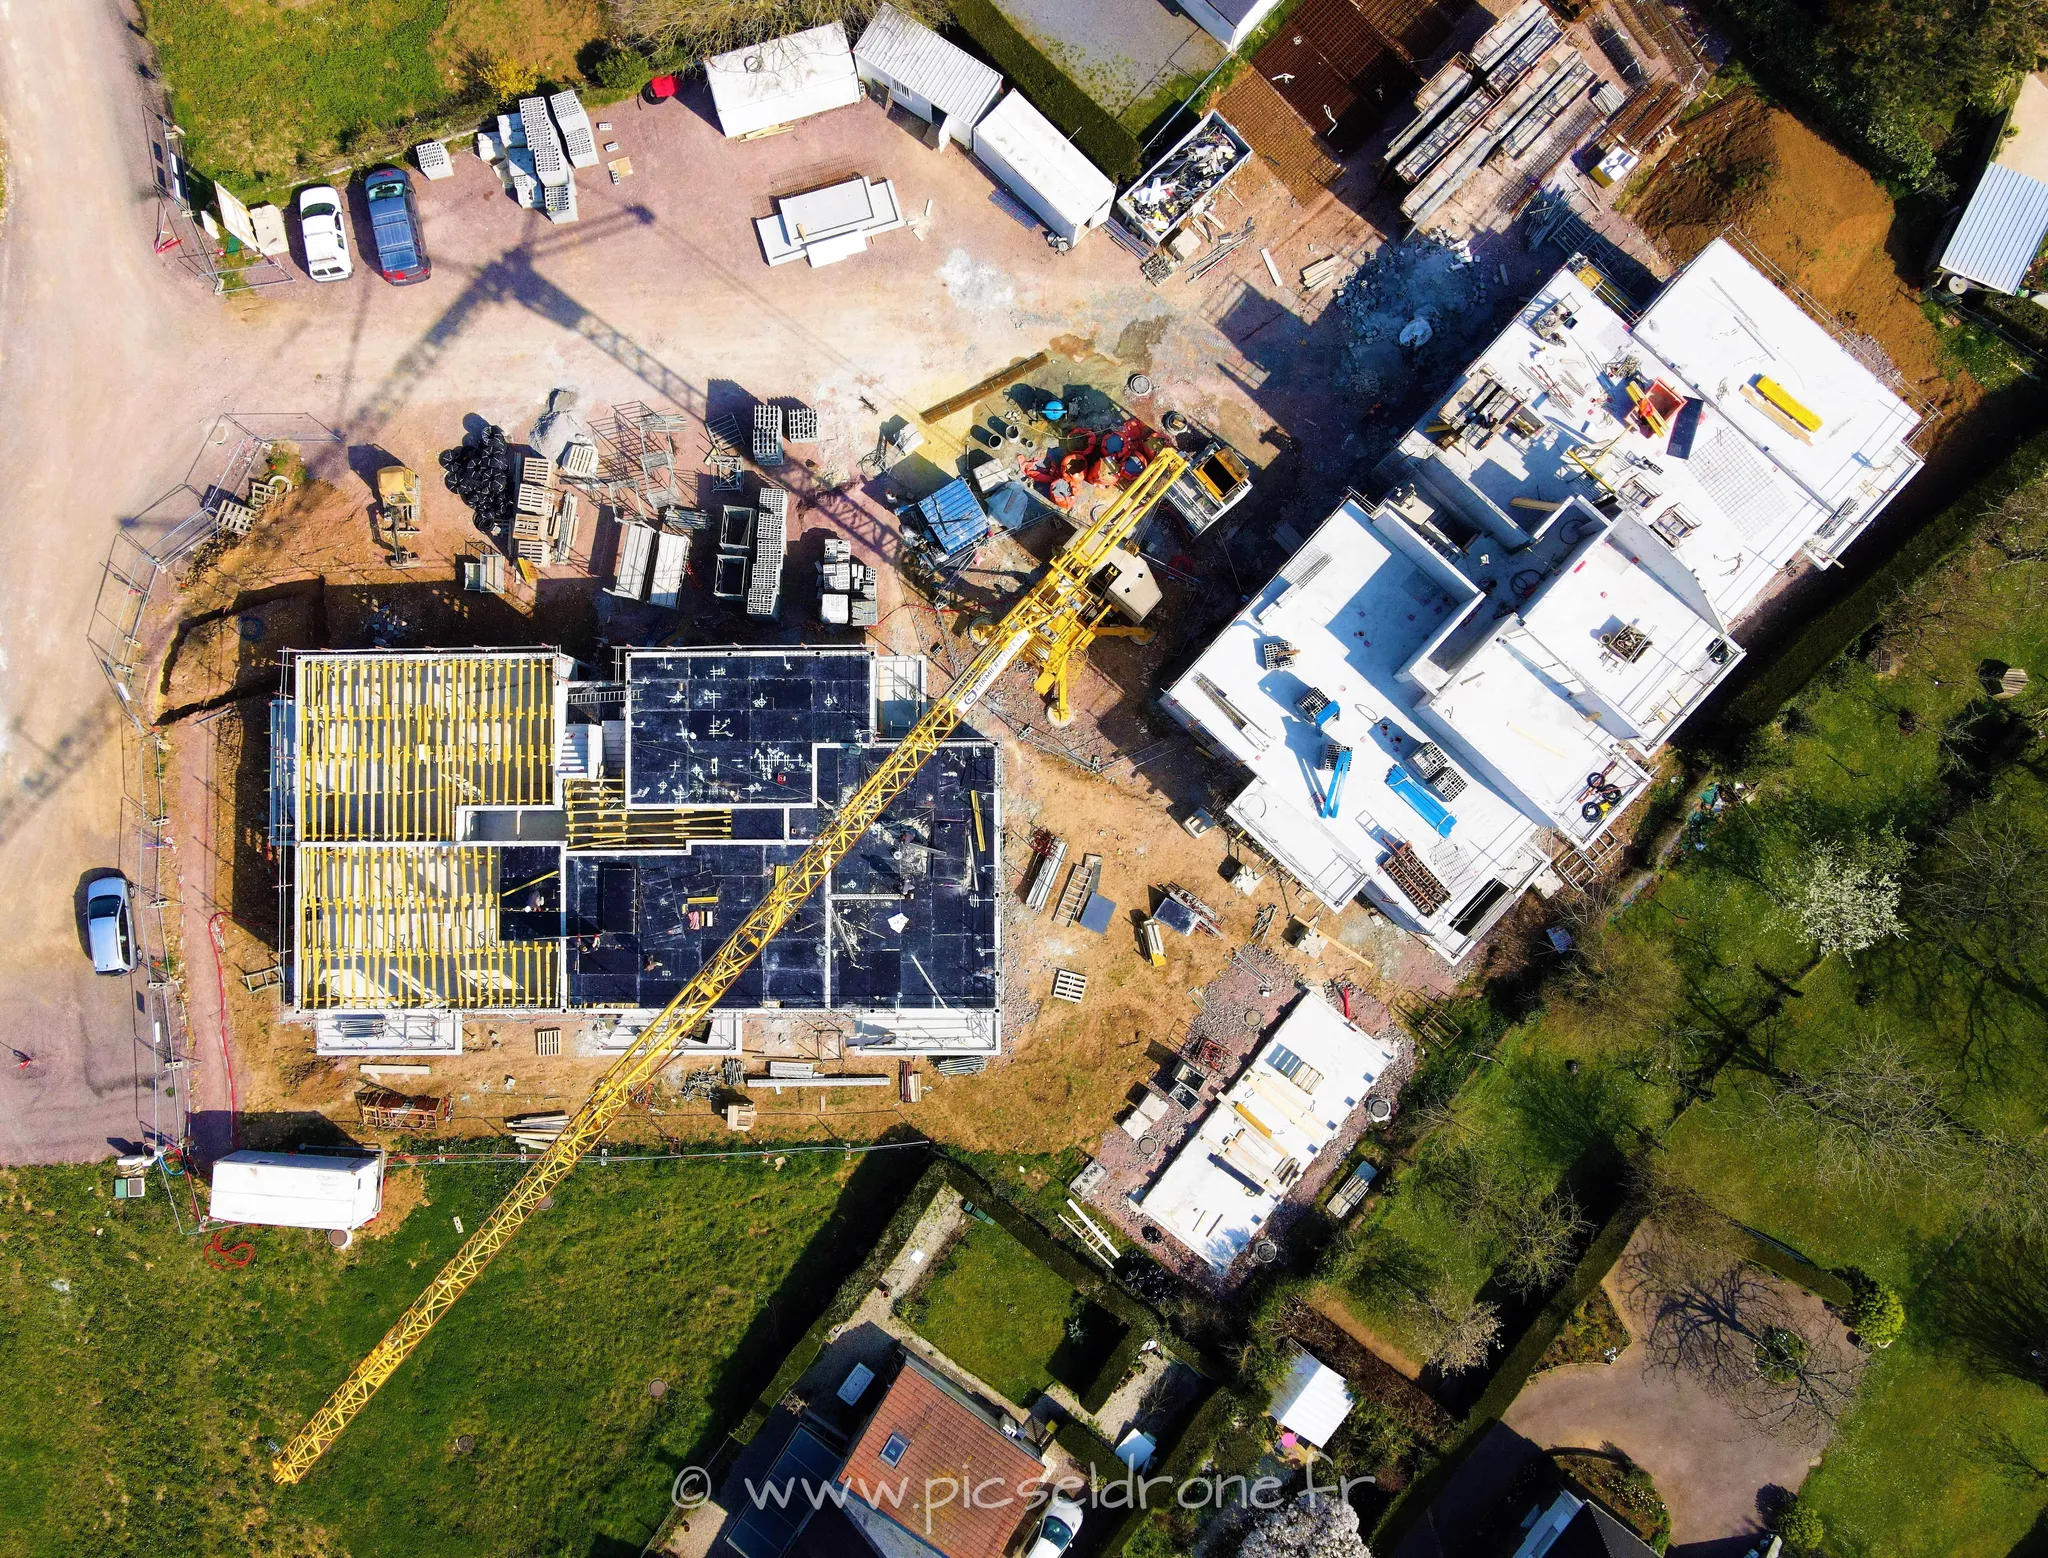 Prise de vue aérienne, photo aérienne de chantier CORMIER BARÉA, VIABILIS, Villa Verde Verson, télépilote drone, pilote drone, PICSEL DRONE, CAEN